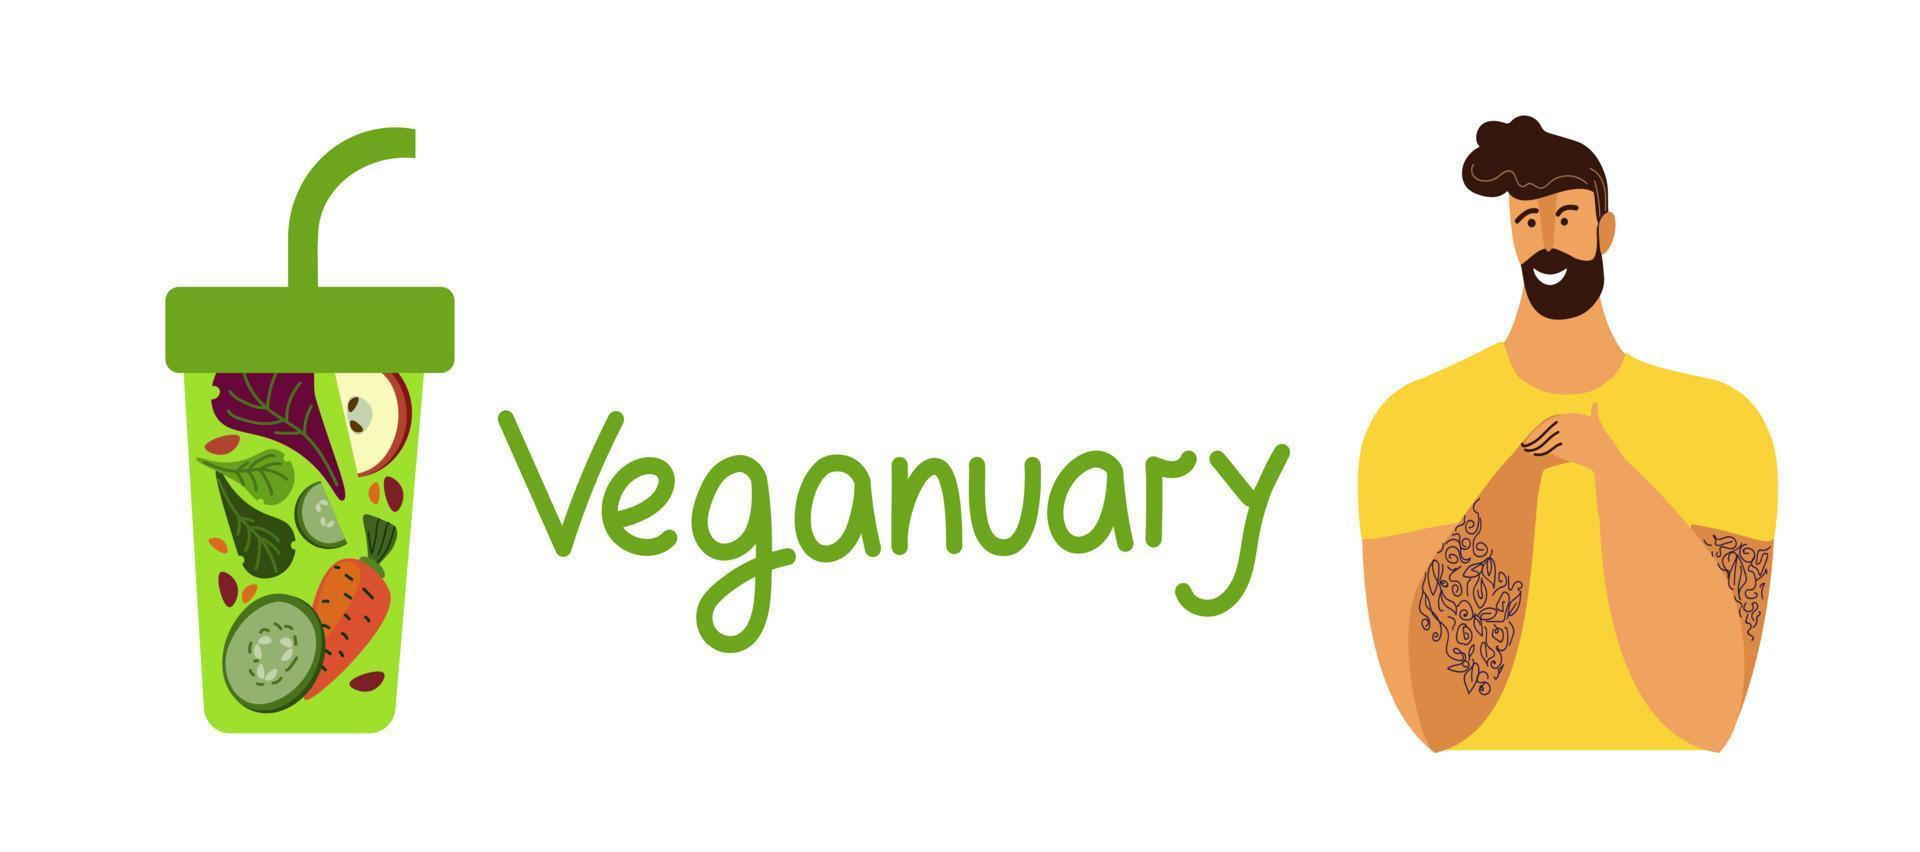 vetor banner de desenho animado doodle plano do dia mundial do vegan. conceito de plano de nutrição, dieta saudável, programa.